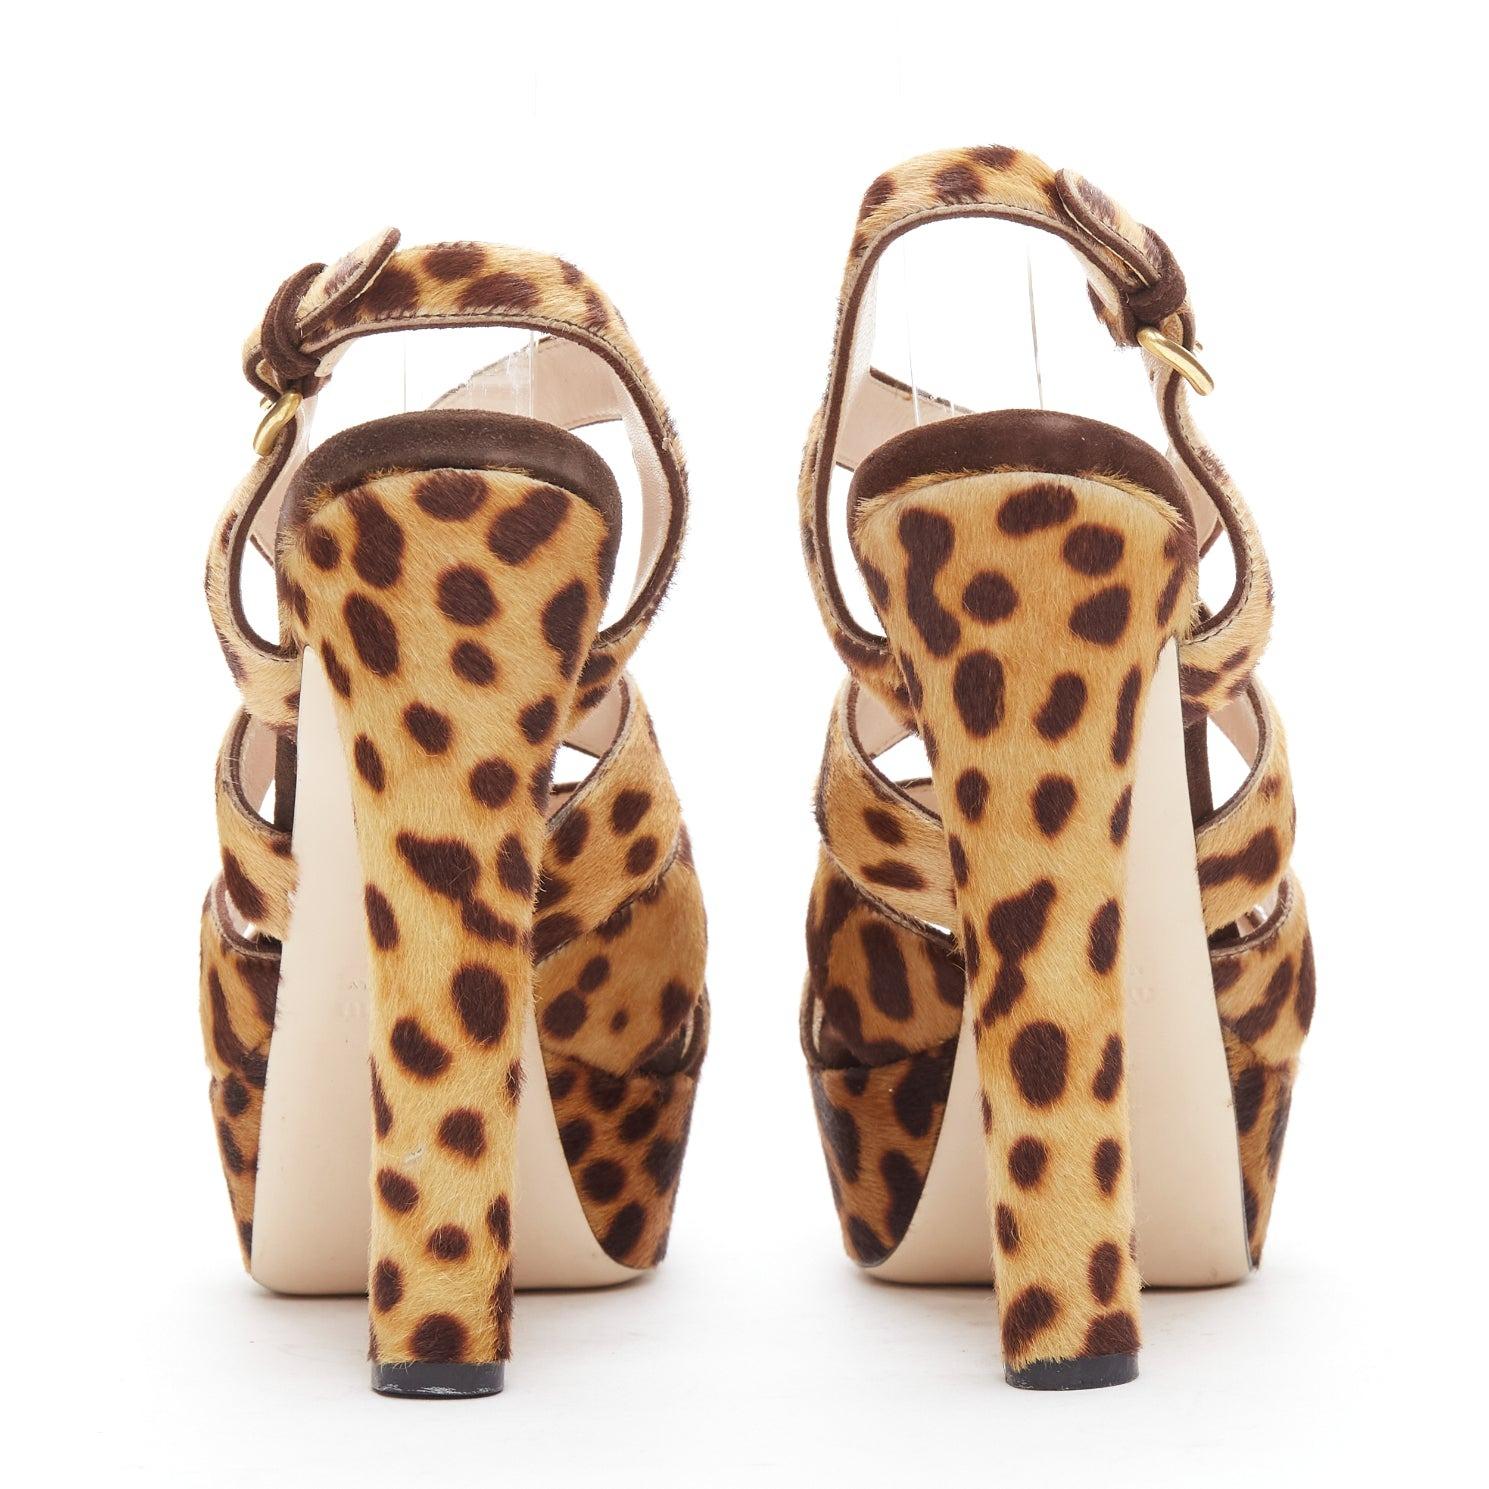  MIU MIU Chaussures à talons compensés en poils de poney imprimés léopard, marron EU37.5 Pour femmes 